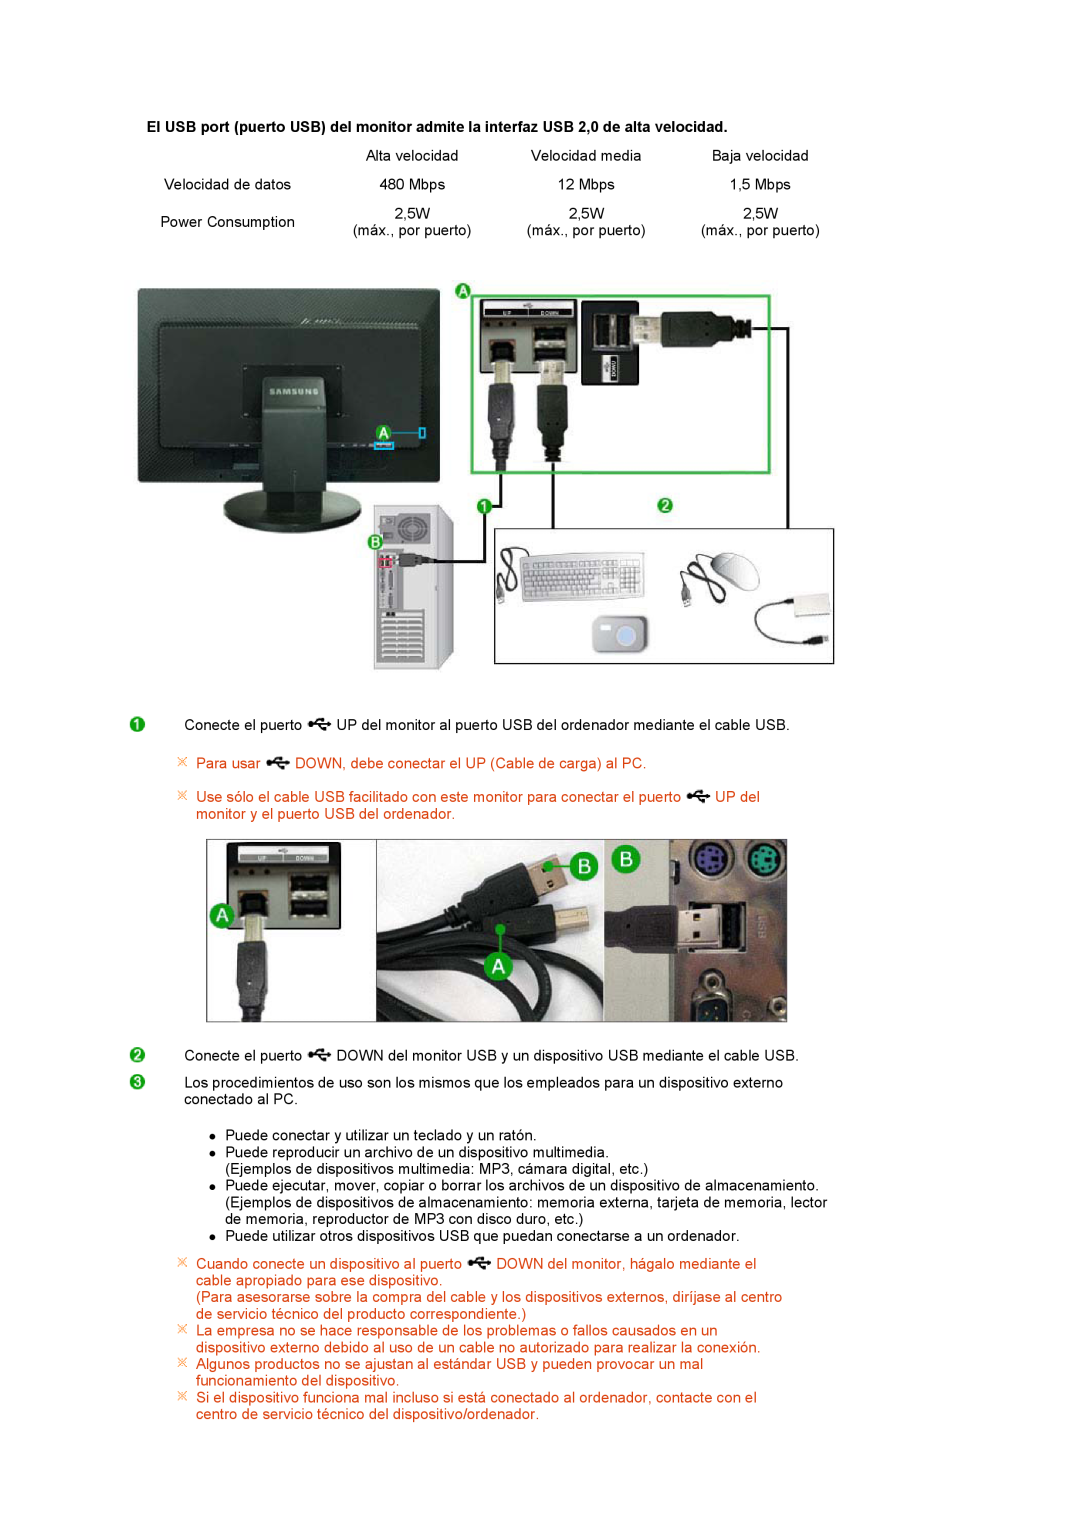 Samsung LS27HUBCBS/EDC, LS27HUBCB/EDC manual Para usar DOWN, debe conectar el UP Cable de carga al PC 